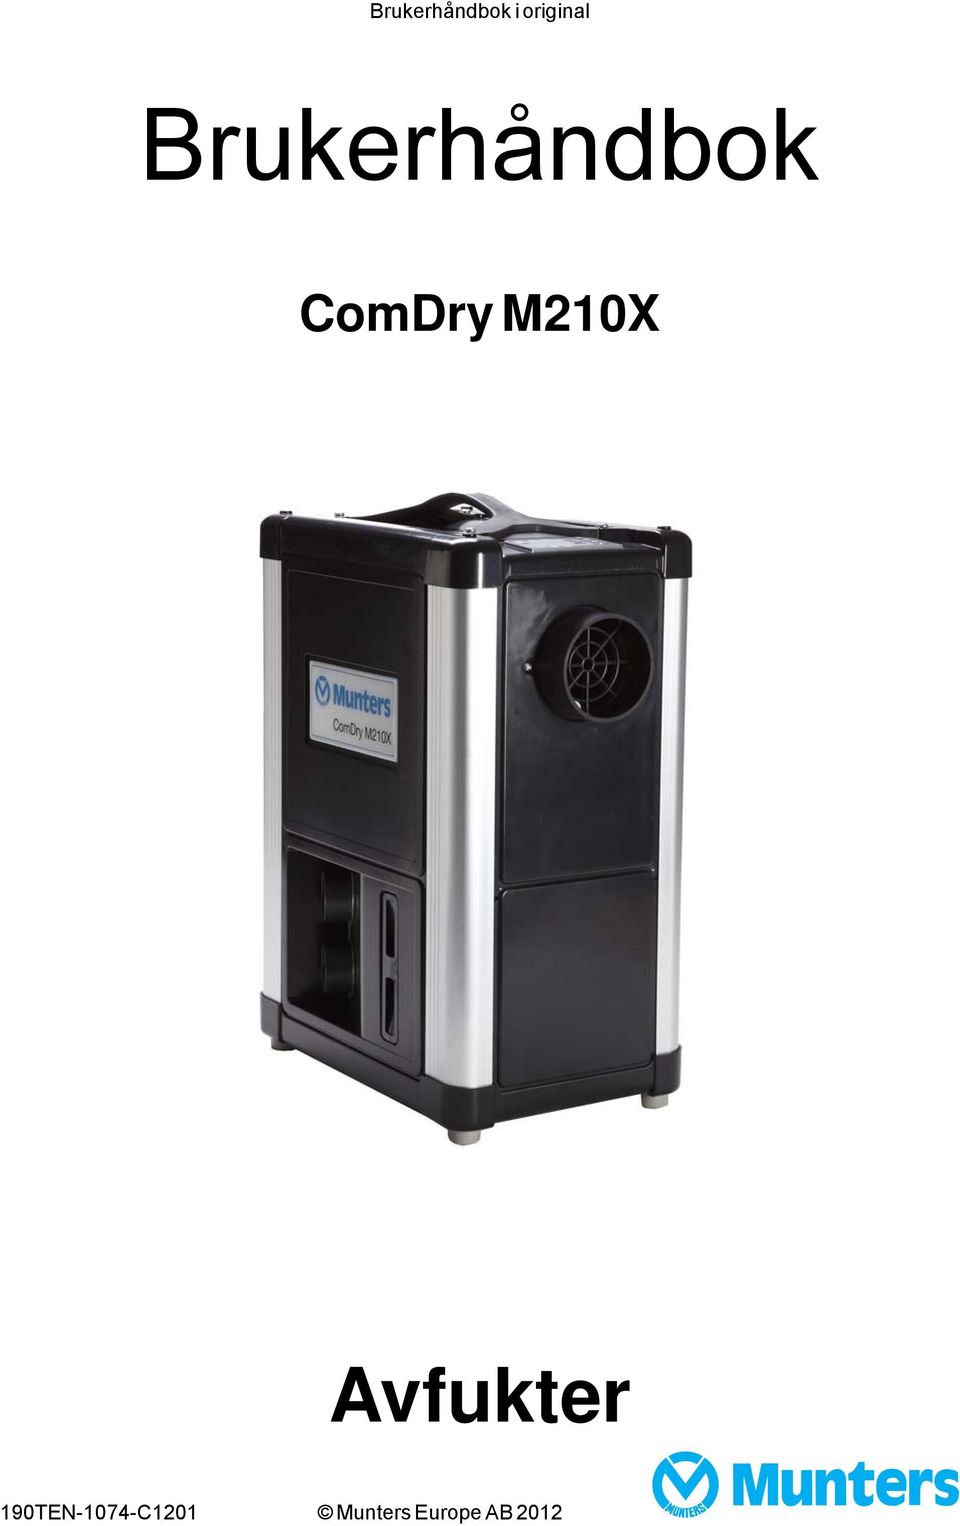 ComDry M210X Avfukter - PDF Gratis nedlasting